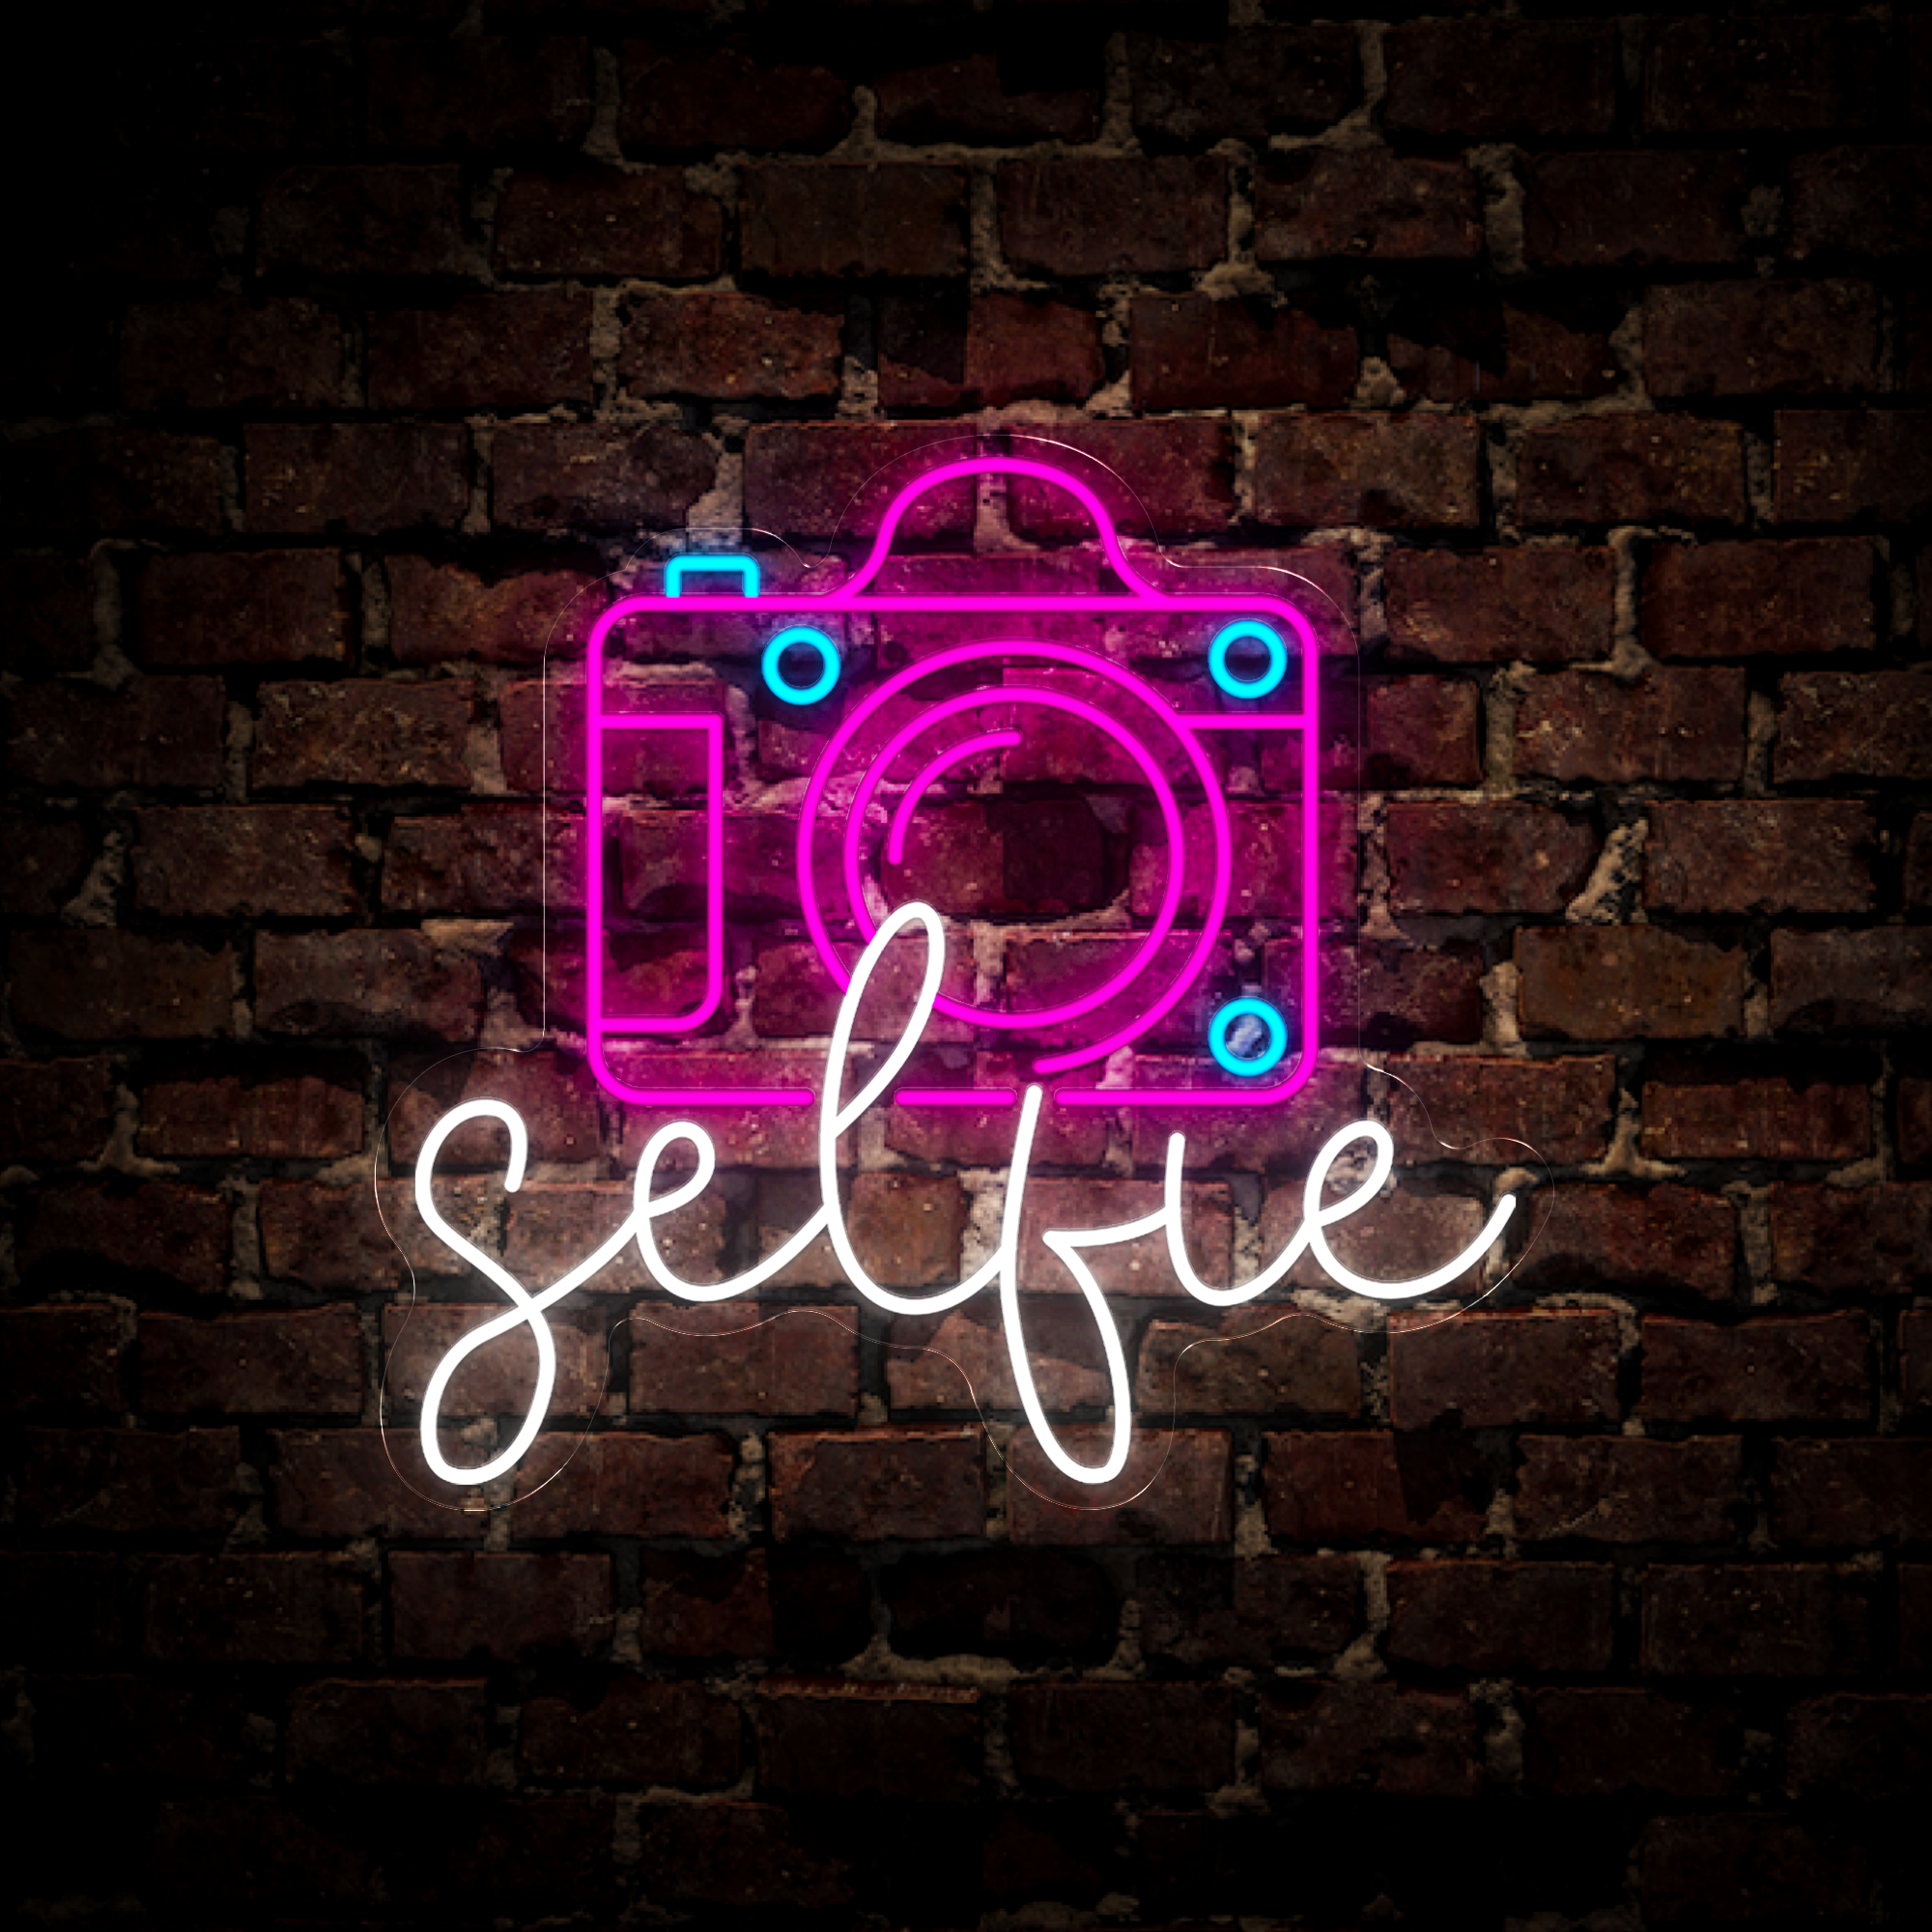 Selfie Neon Sign